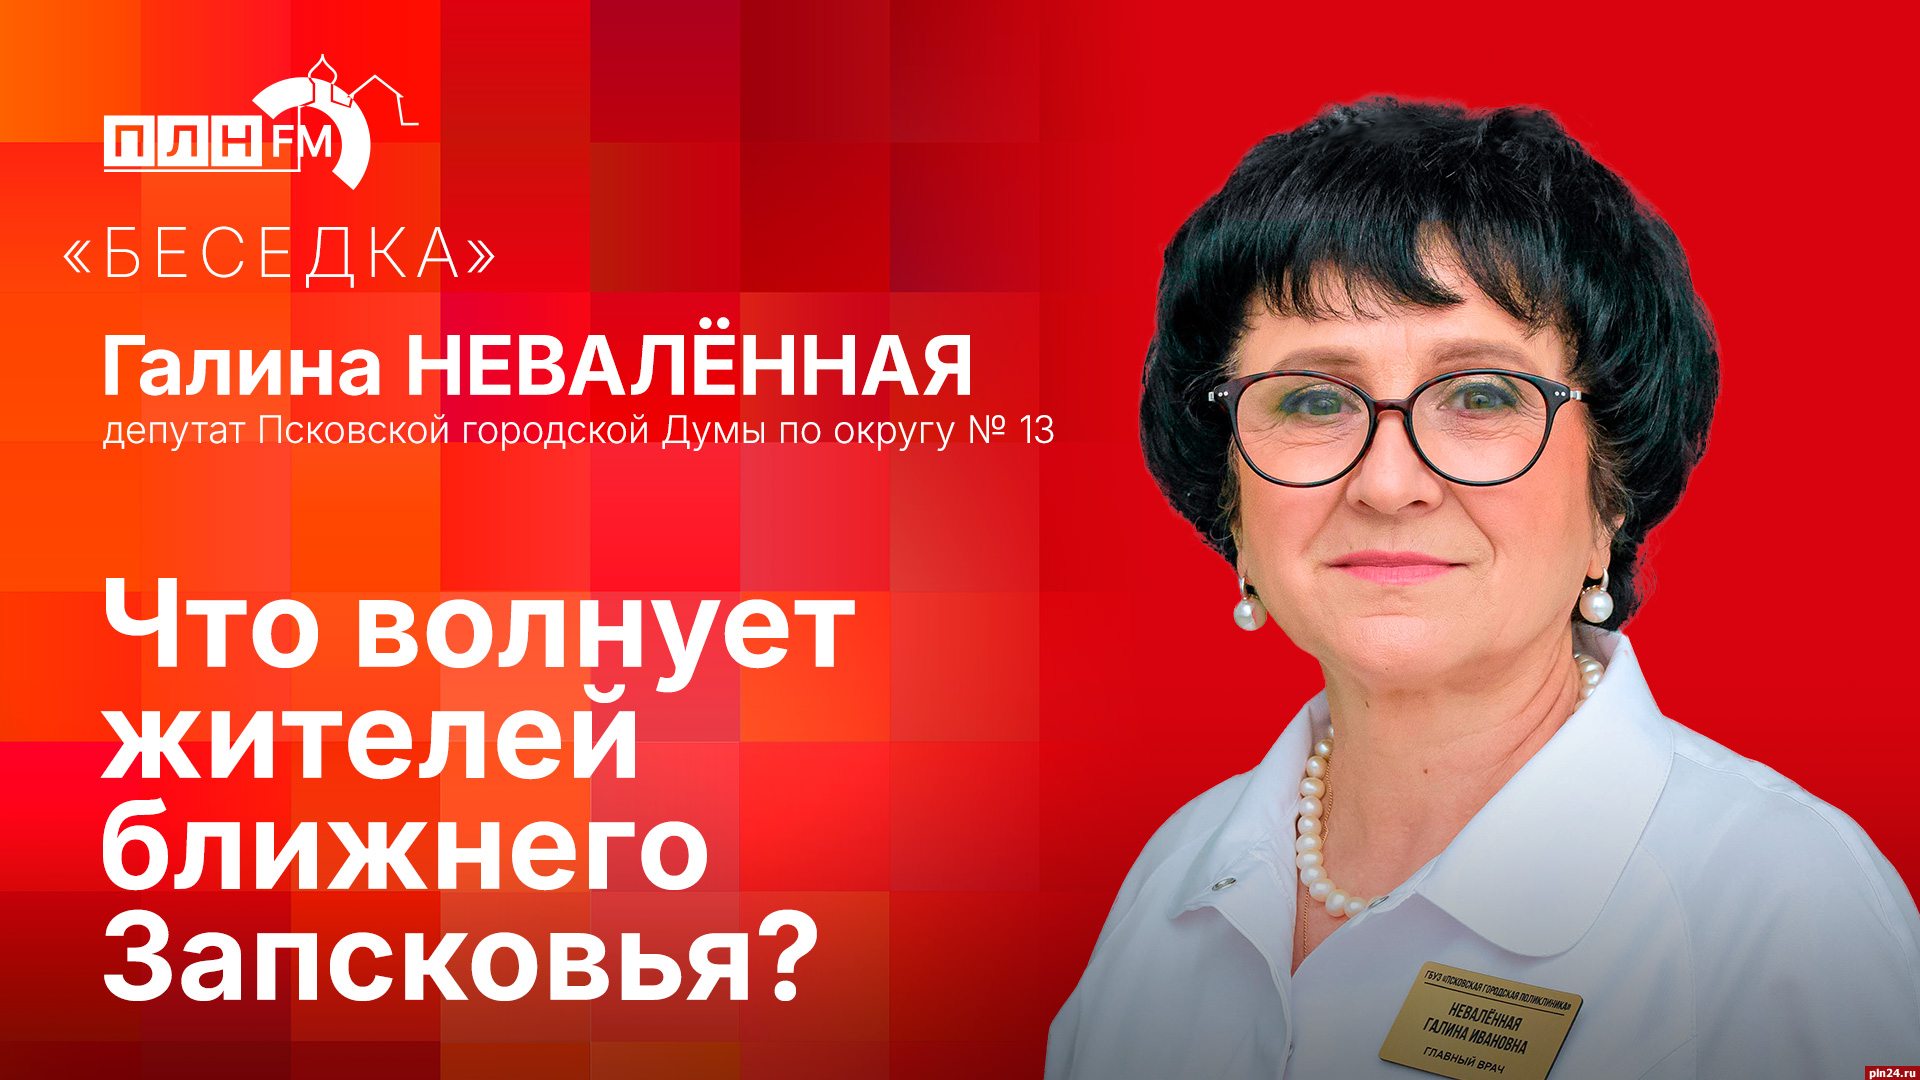 Начинается видеотрансляция программы «Беседка»: Что волнует жителей ближнего Запсковья?